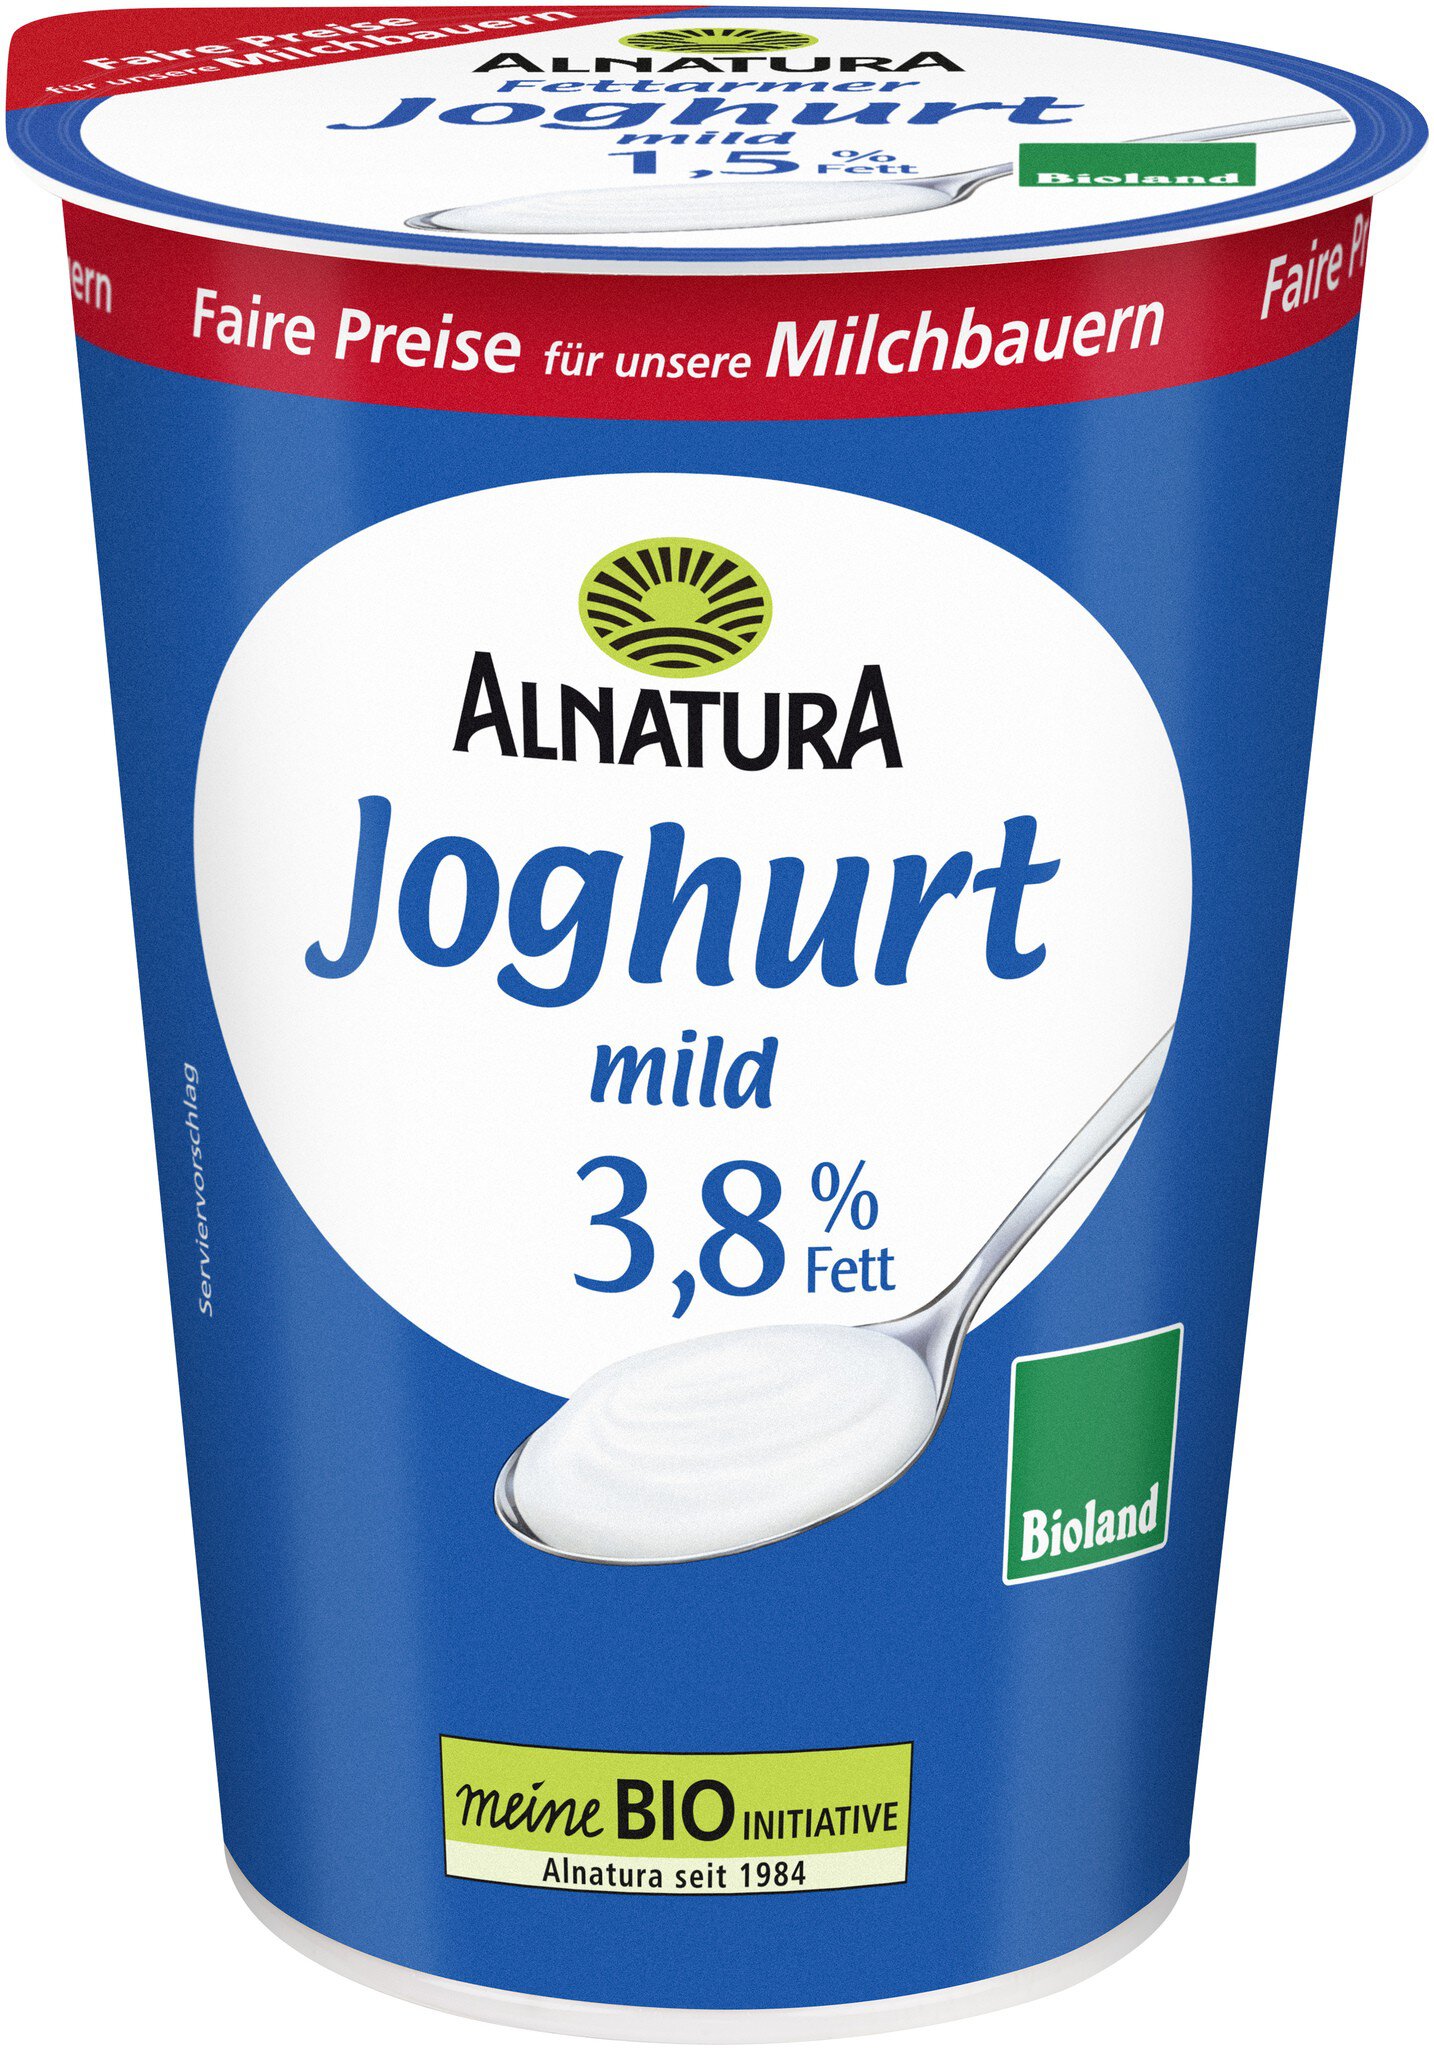 von Joghurt Fett 3,8 mild g) Bio-Qualität in % Alnatura (500